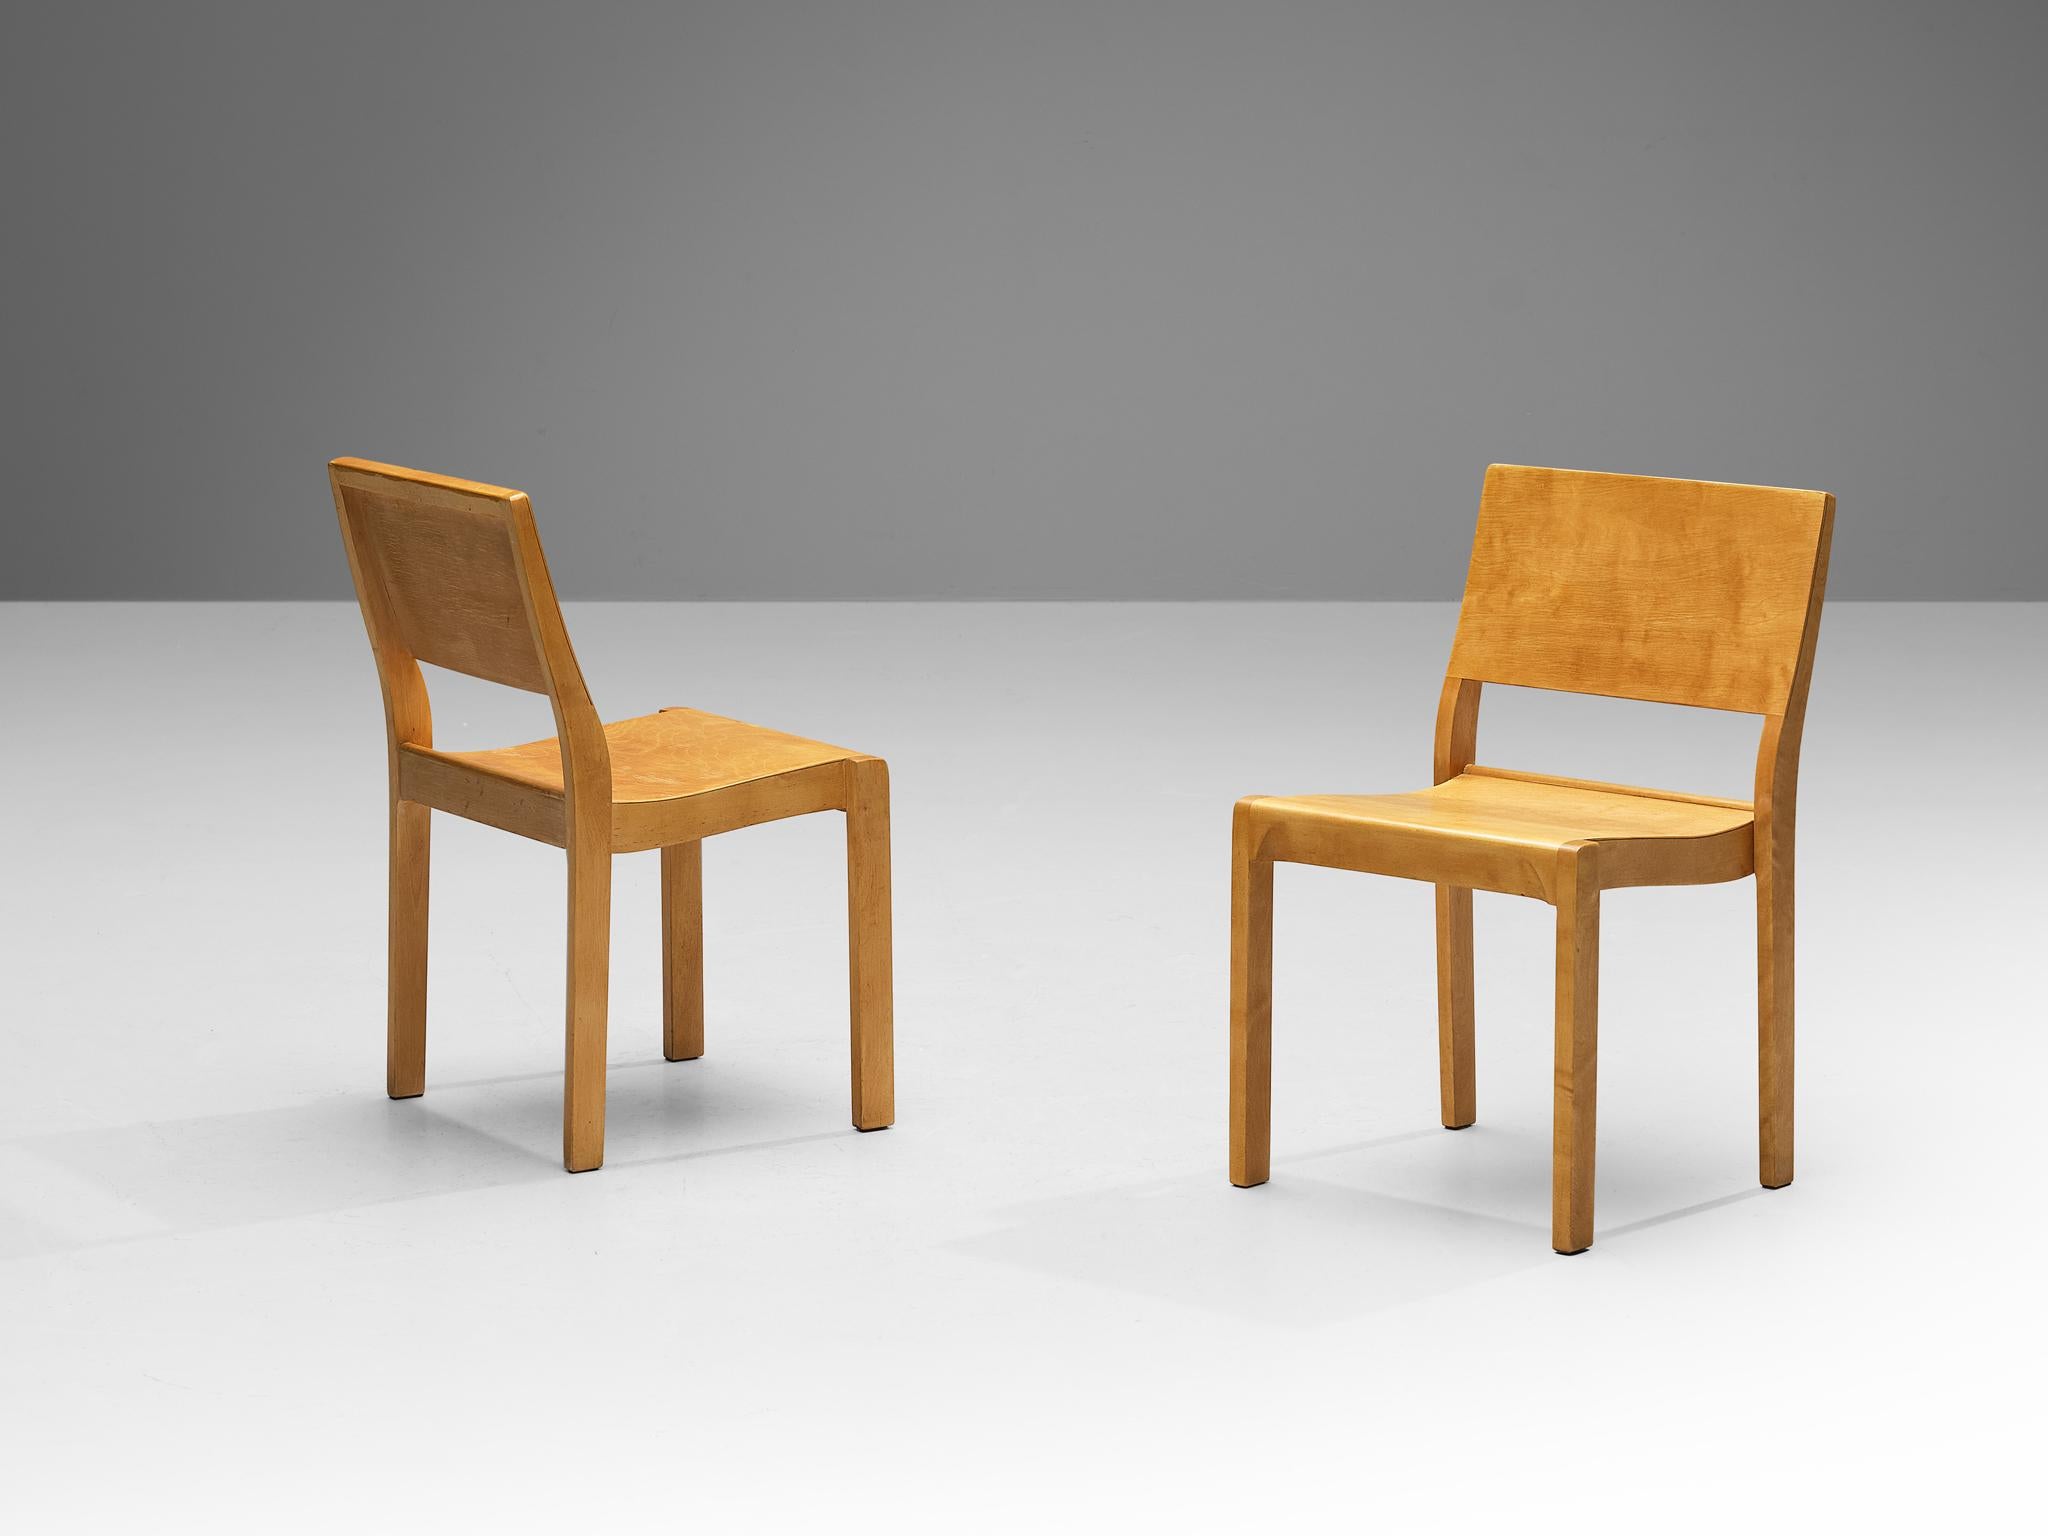 Alvar Aalto pour Artek, chaises de salle à manger, modèle '11', bouleau, contreplaqué, Finlande, design 1929

Jolie paire de chaises empilables conçues par Alvar Aalto en 1929. Cet ensemble est fabriqué par Artek Finland. Ces chaises sont fabriquées